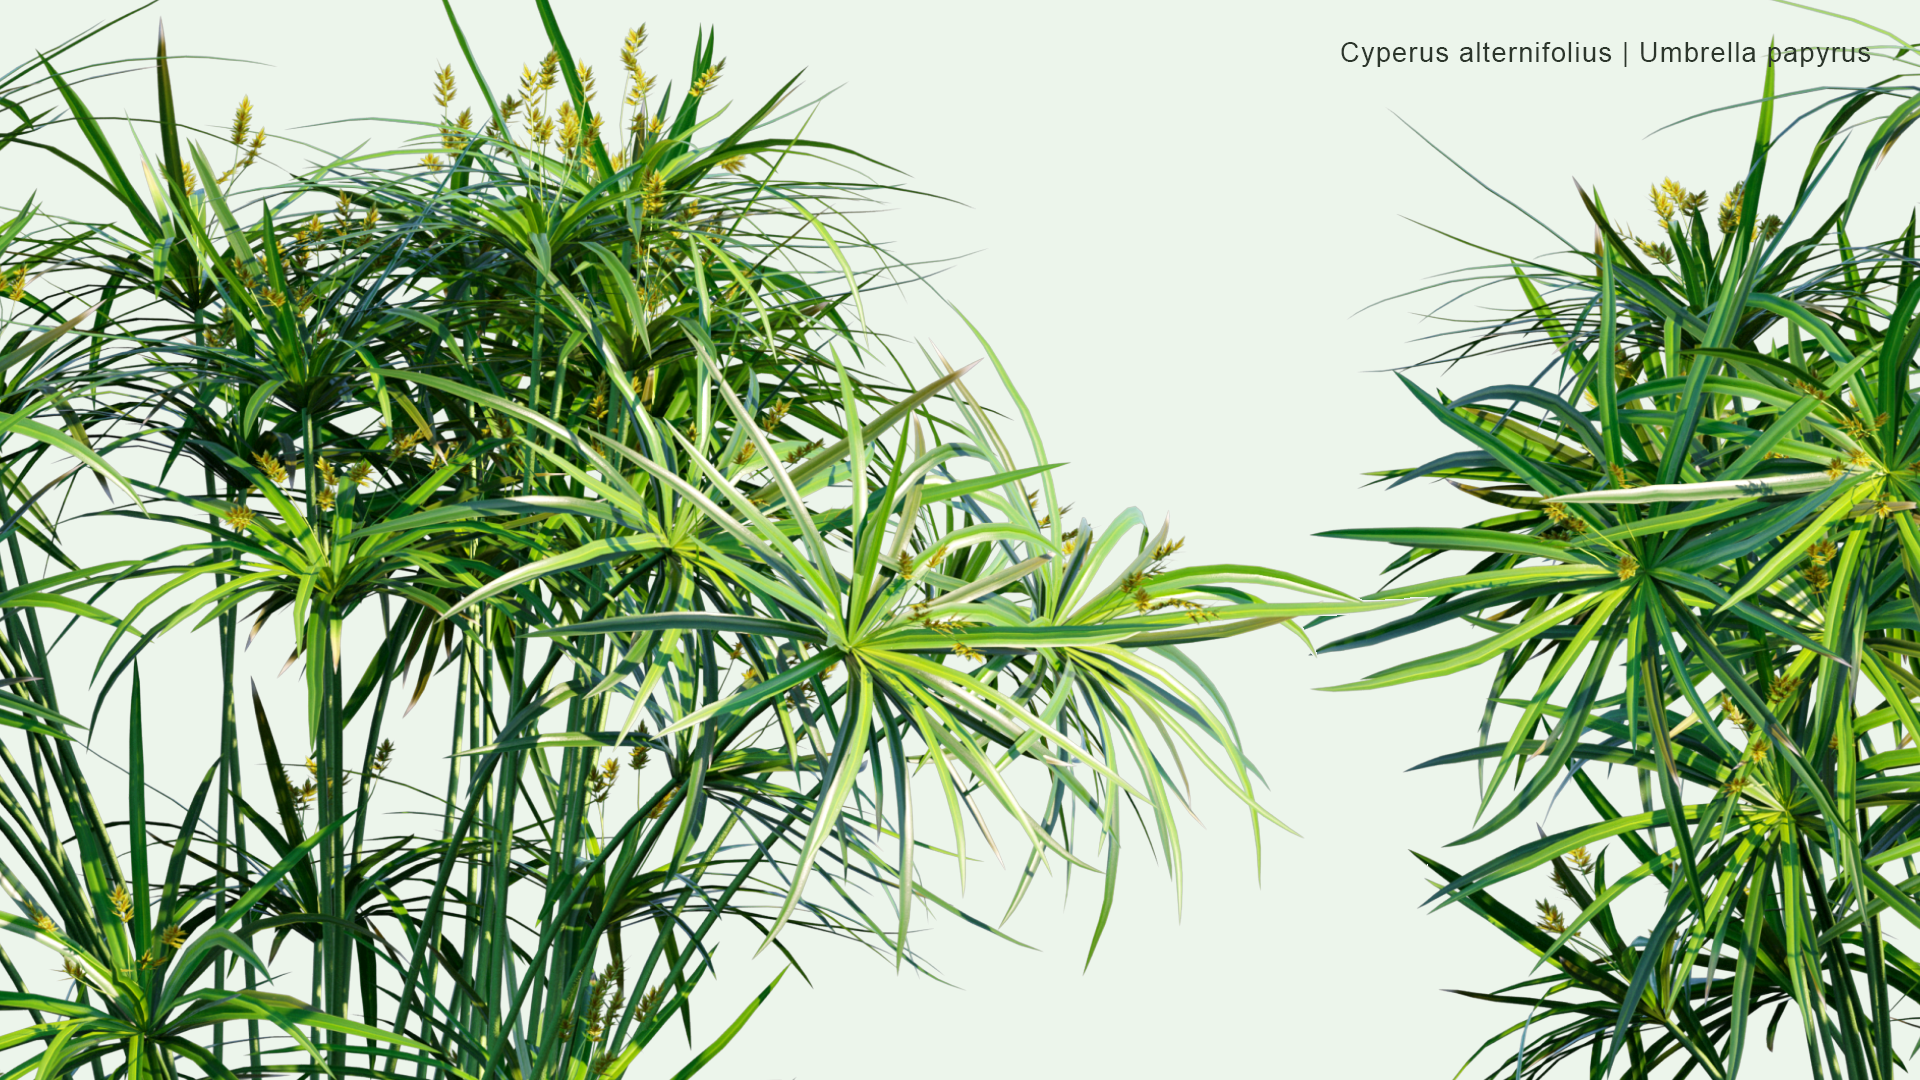 2D Cyperus Alternifolius - Umbrella Papyrus, Umbrella Sedge, Umbrella Palm